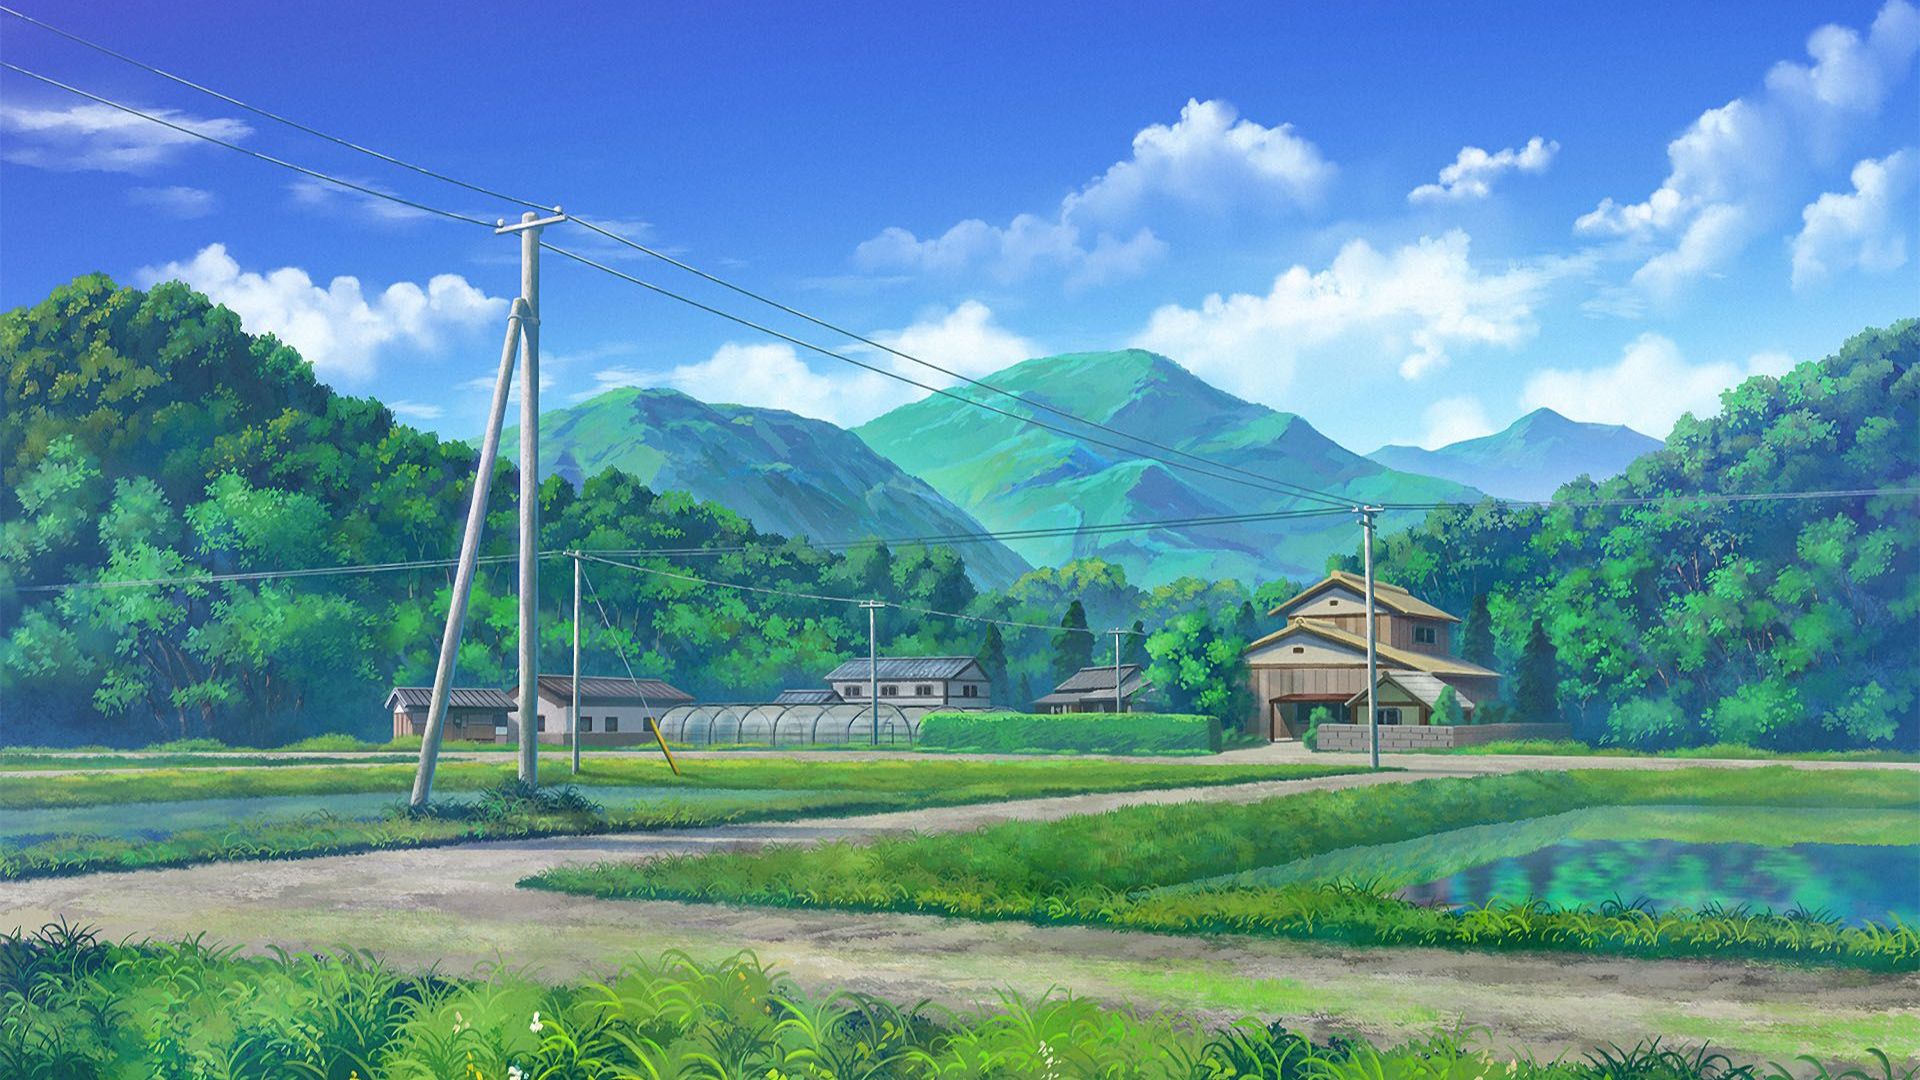 Anime Village: Đừng bỏ lỡ cảnh anime vô cùng độc đáo tại ngôi làng nghệ thuật này! Với các nhân vật đáng yêu và màu sắc rực rỡ, bạn sẽ được trải nghiệm như đang sống trong thế giới tưởng tượng của chính mình.